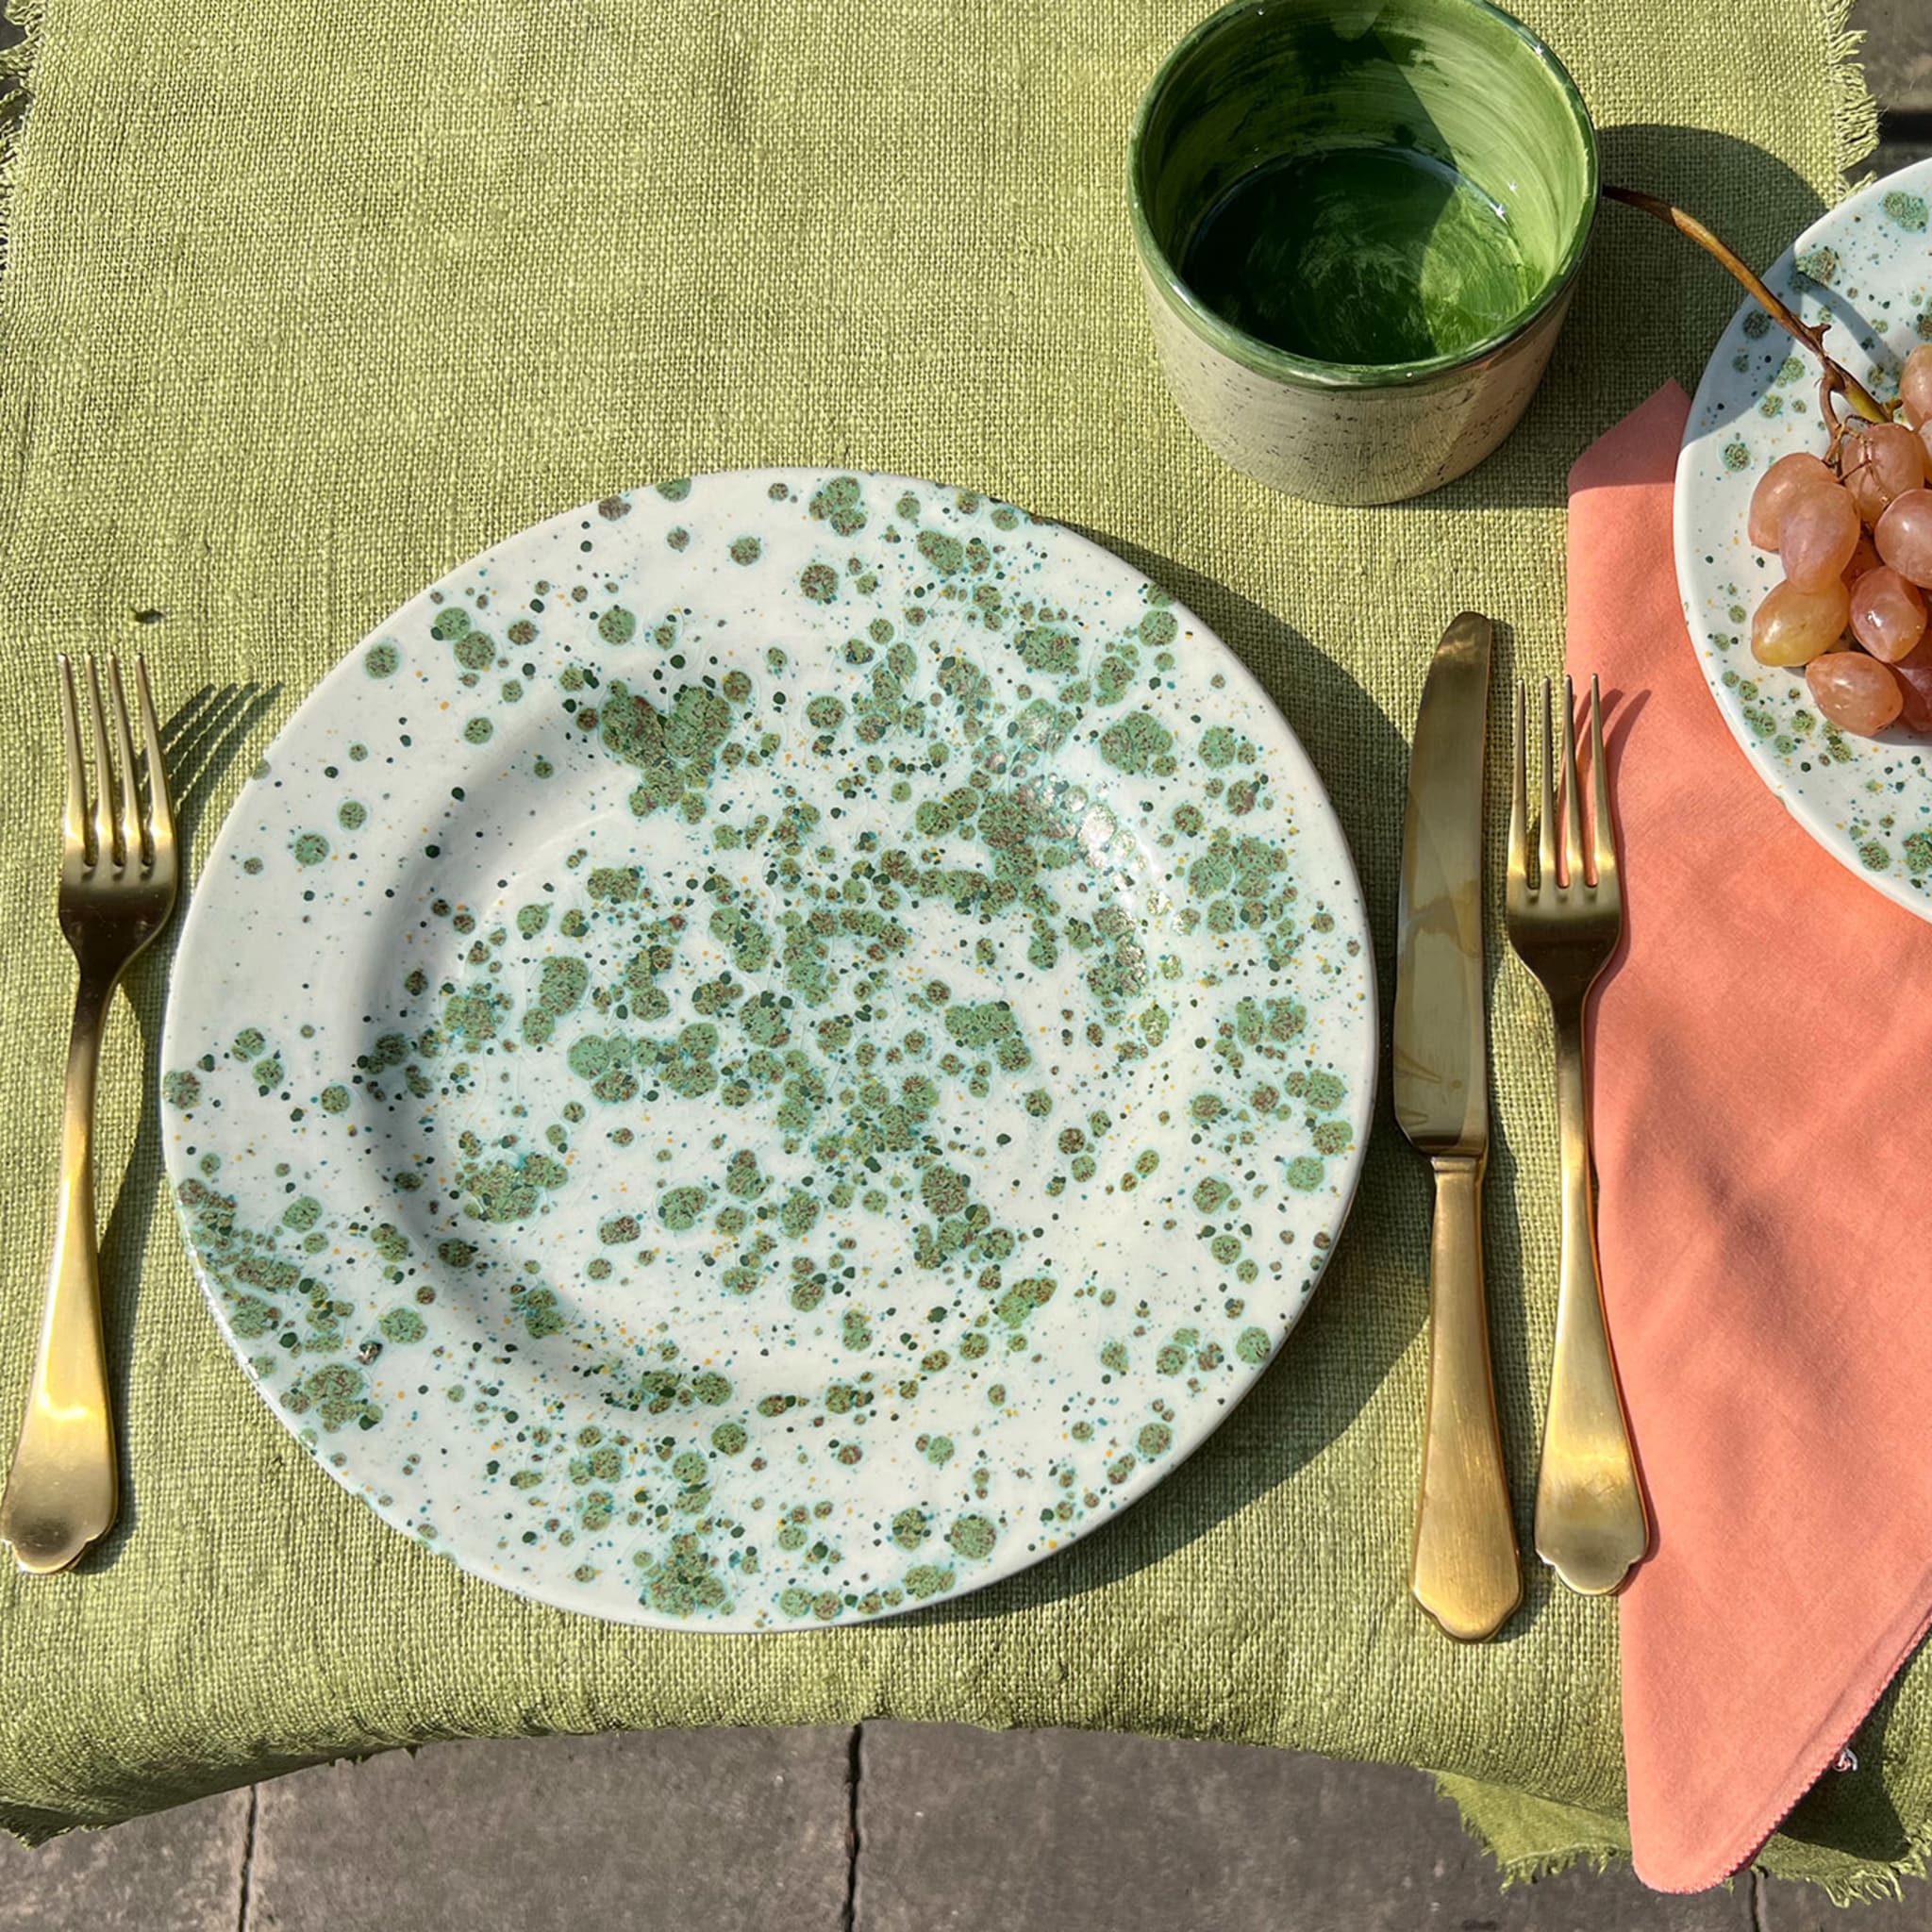 Herb Mottled Green Dinner Plate - Alternative view 1